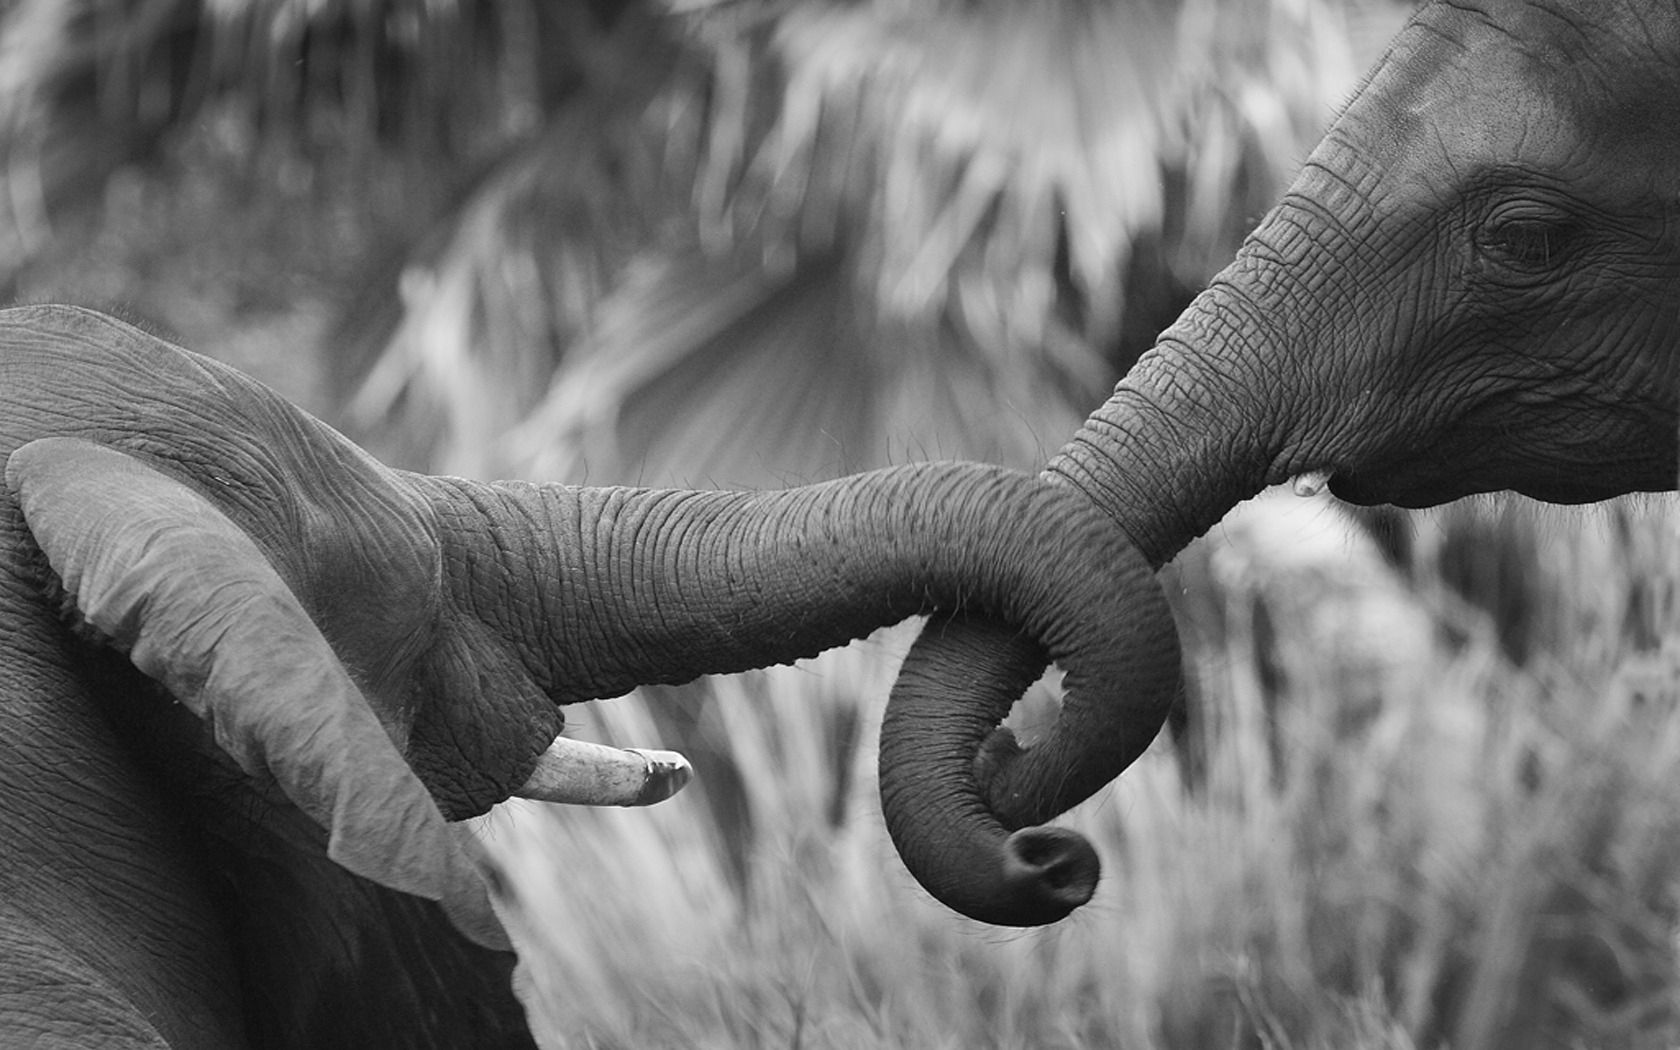 Скачать обои бесплатно Африканский Слон, Слоны, Животные картинка на рабочий стол ПК